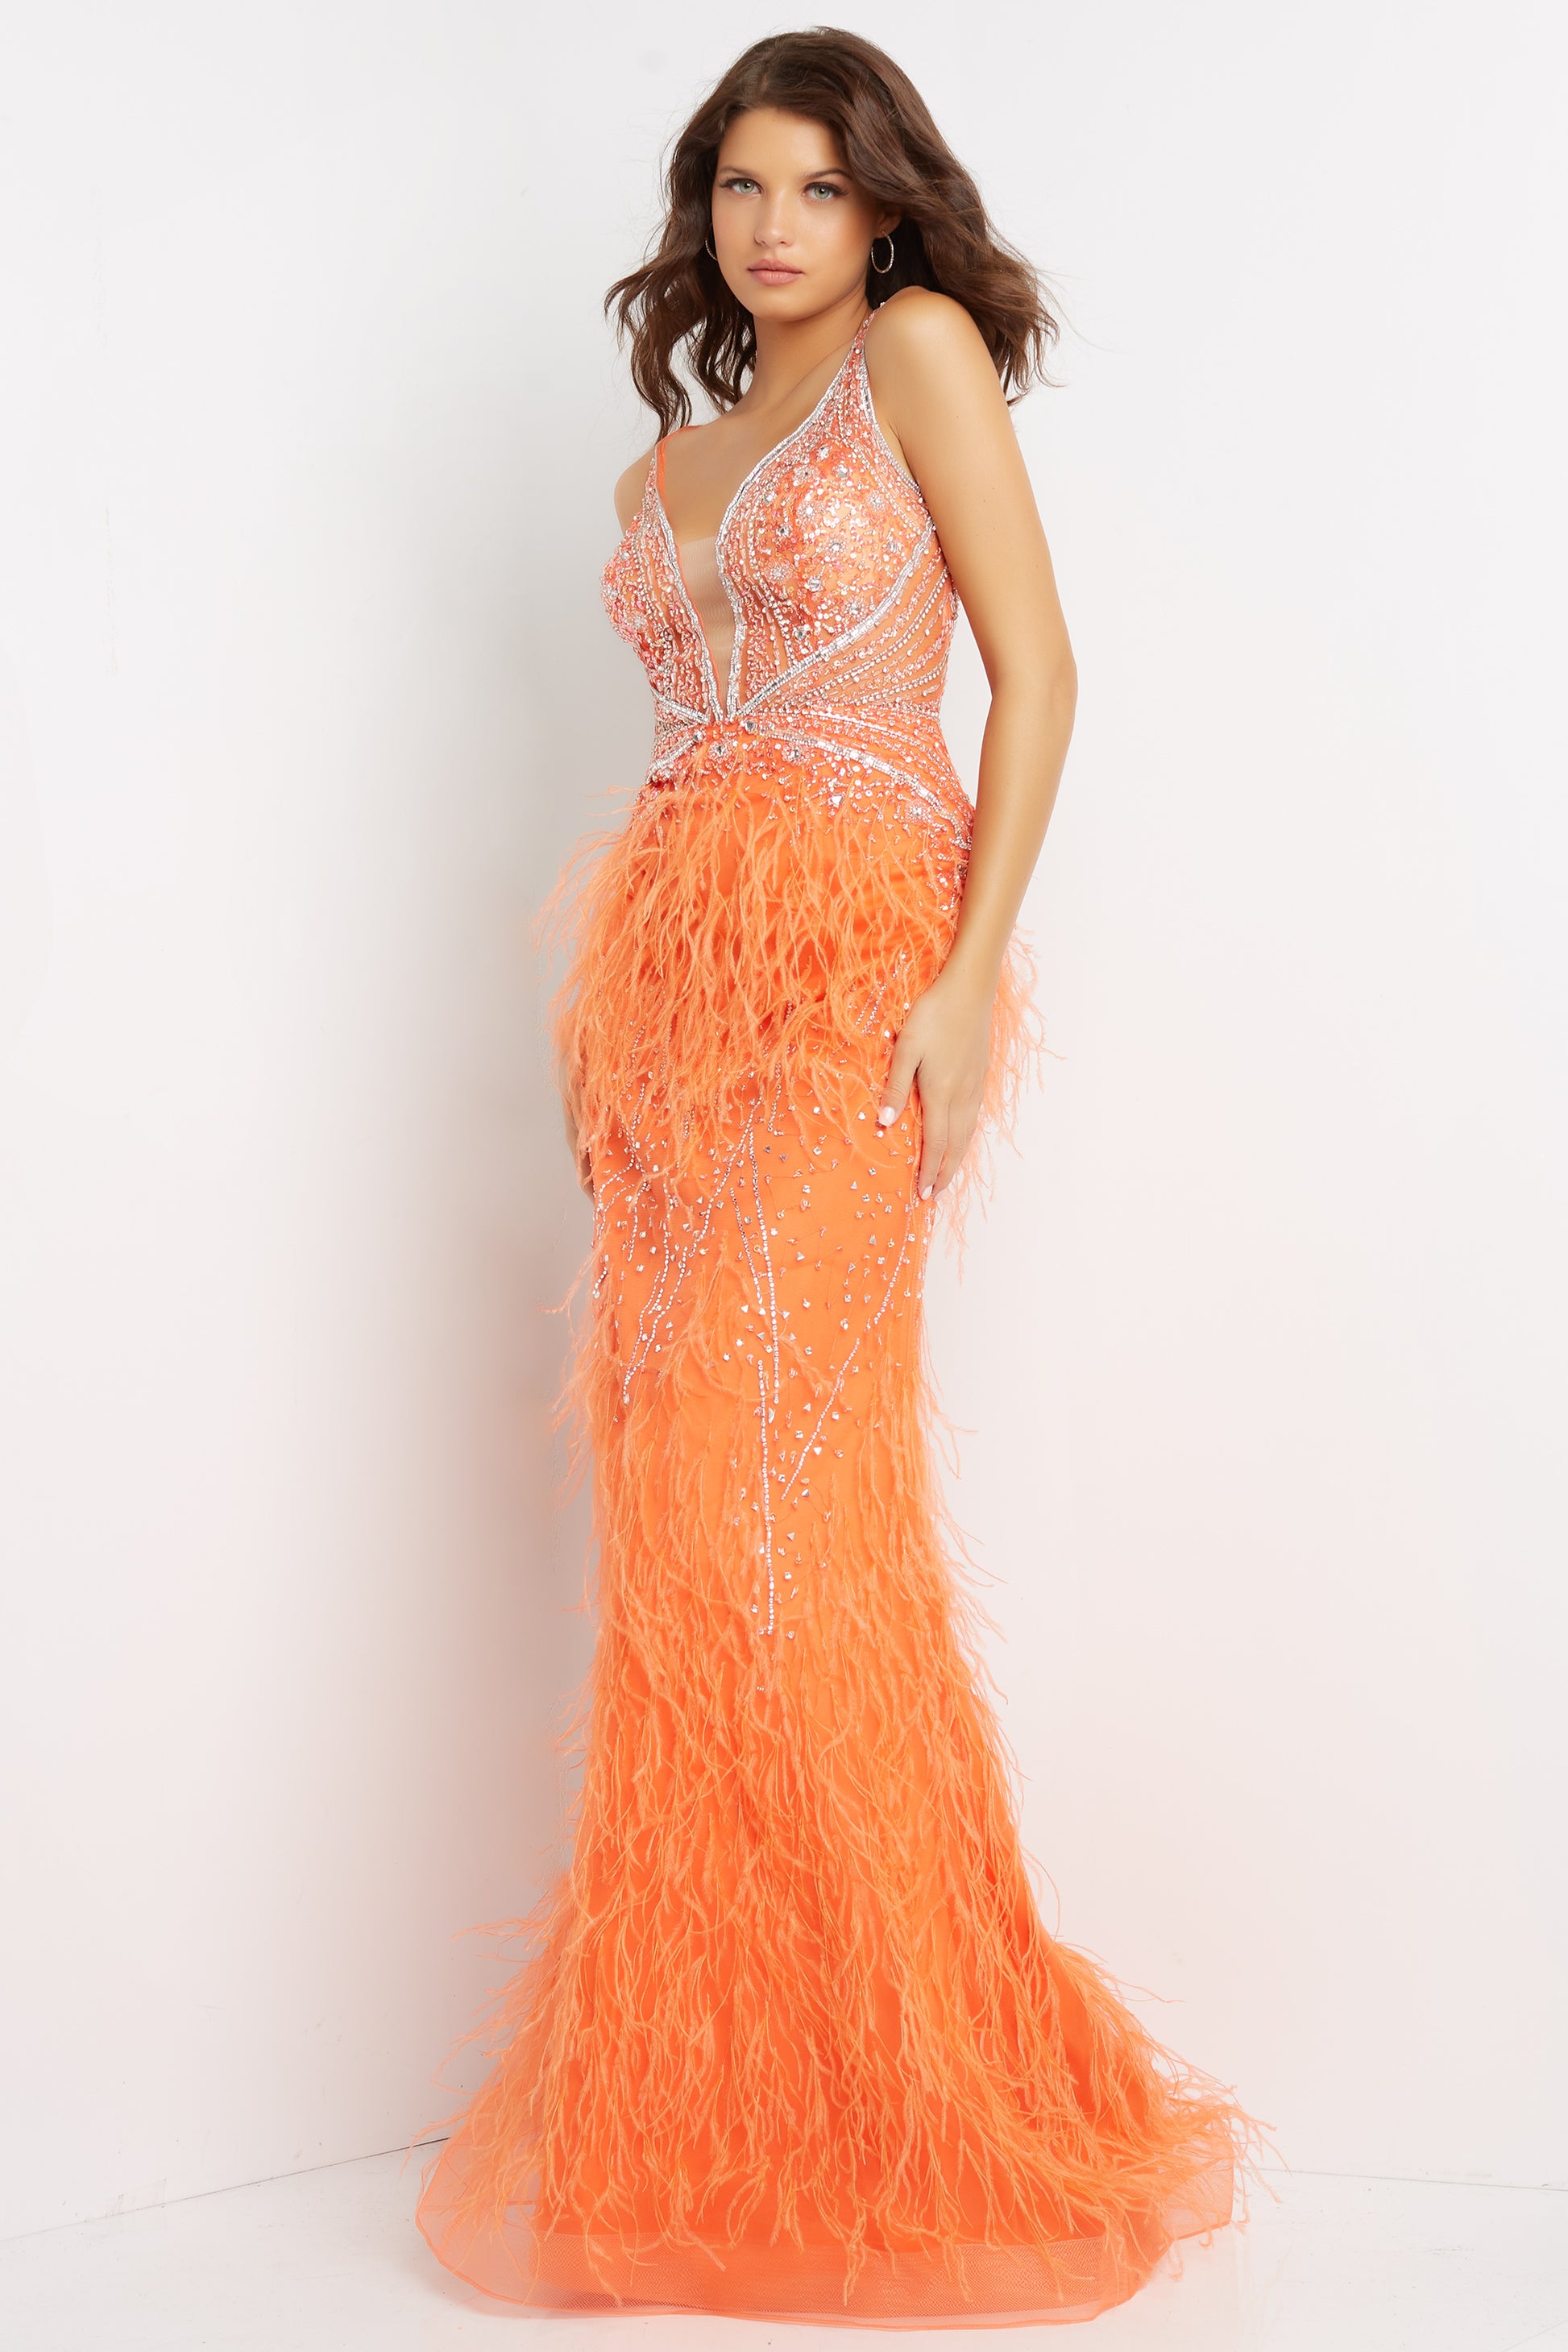 Jovani 03023 orange prom dress fitted v neckline front